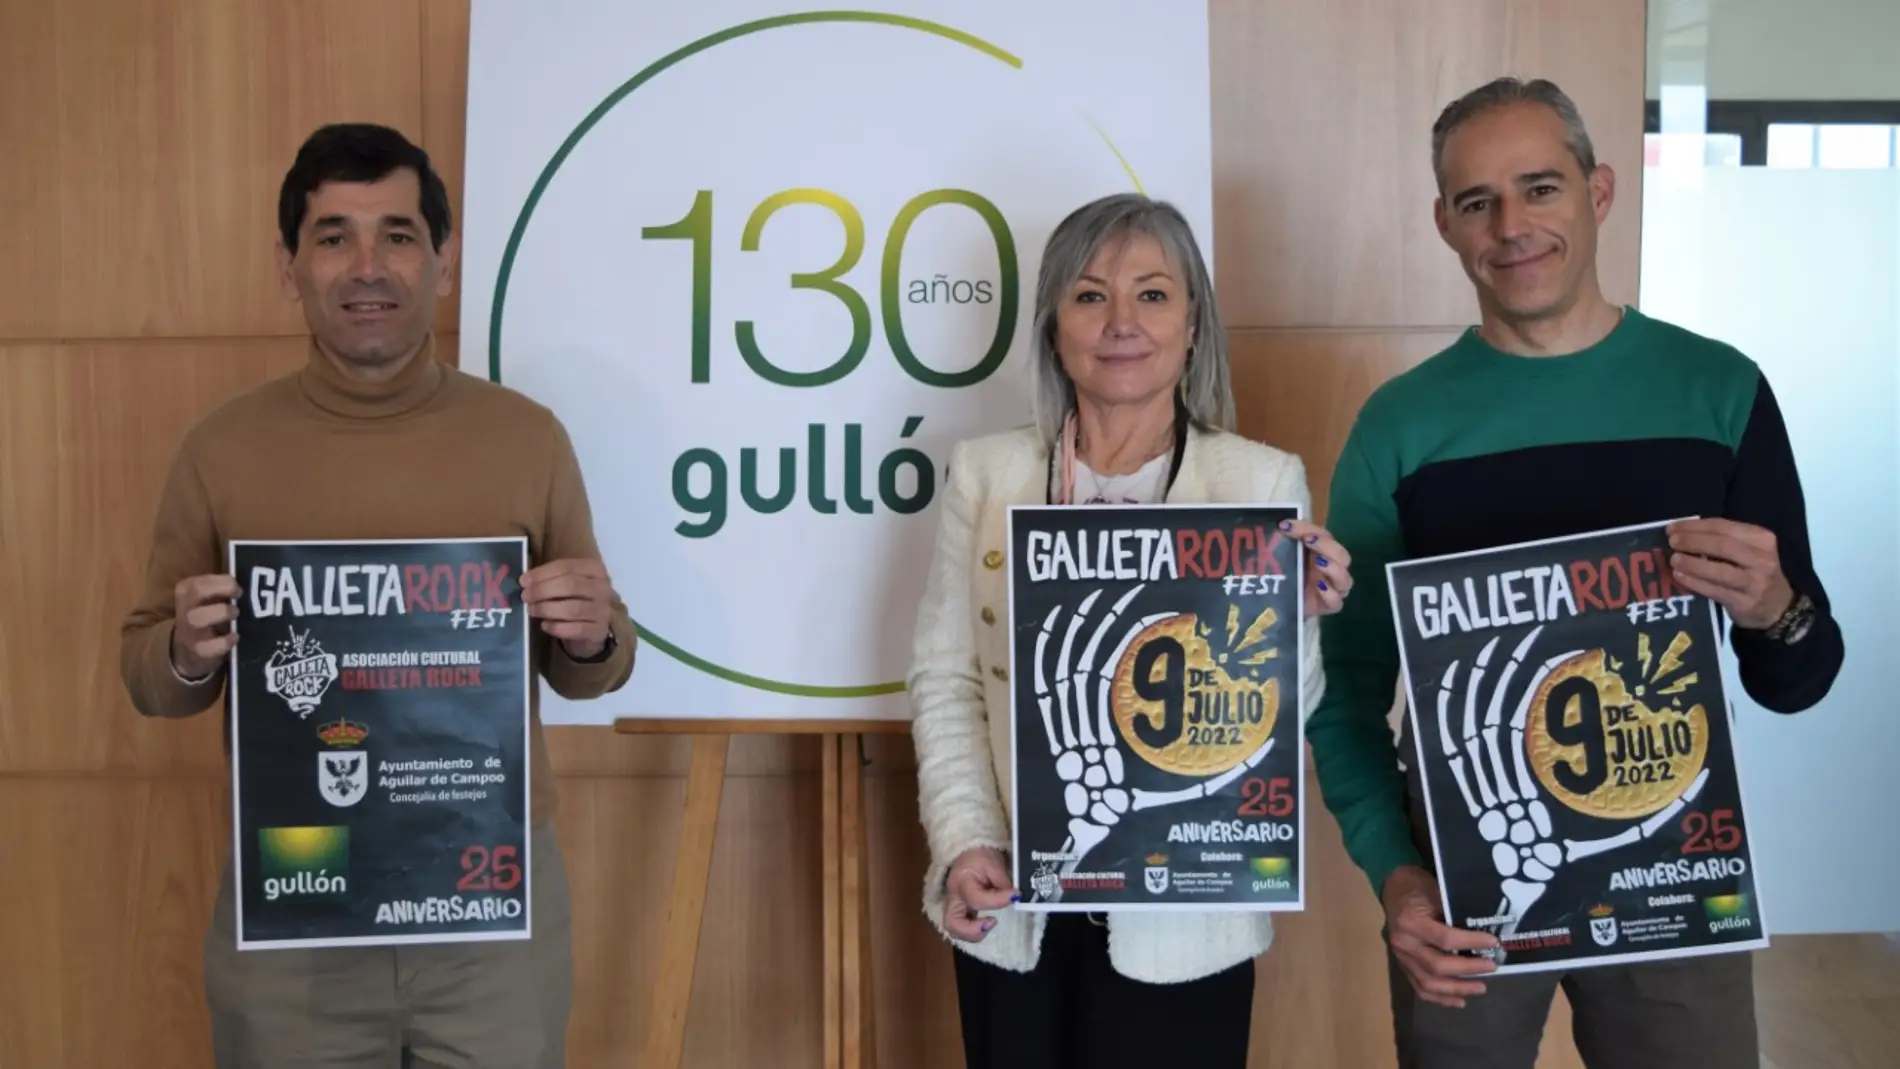 Galletas Gullón apoya la celebración del Galleta Rock Fest 2022 en Aguilar de Campoo